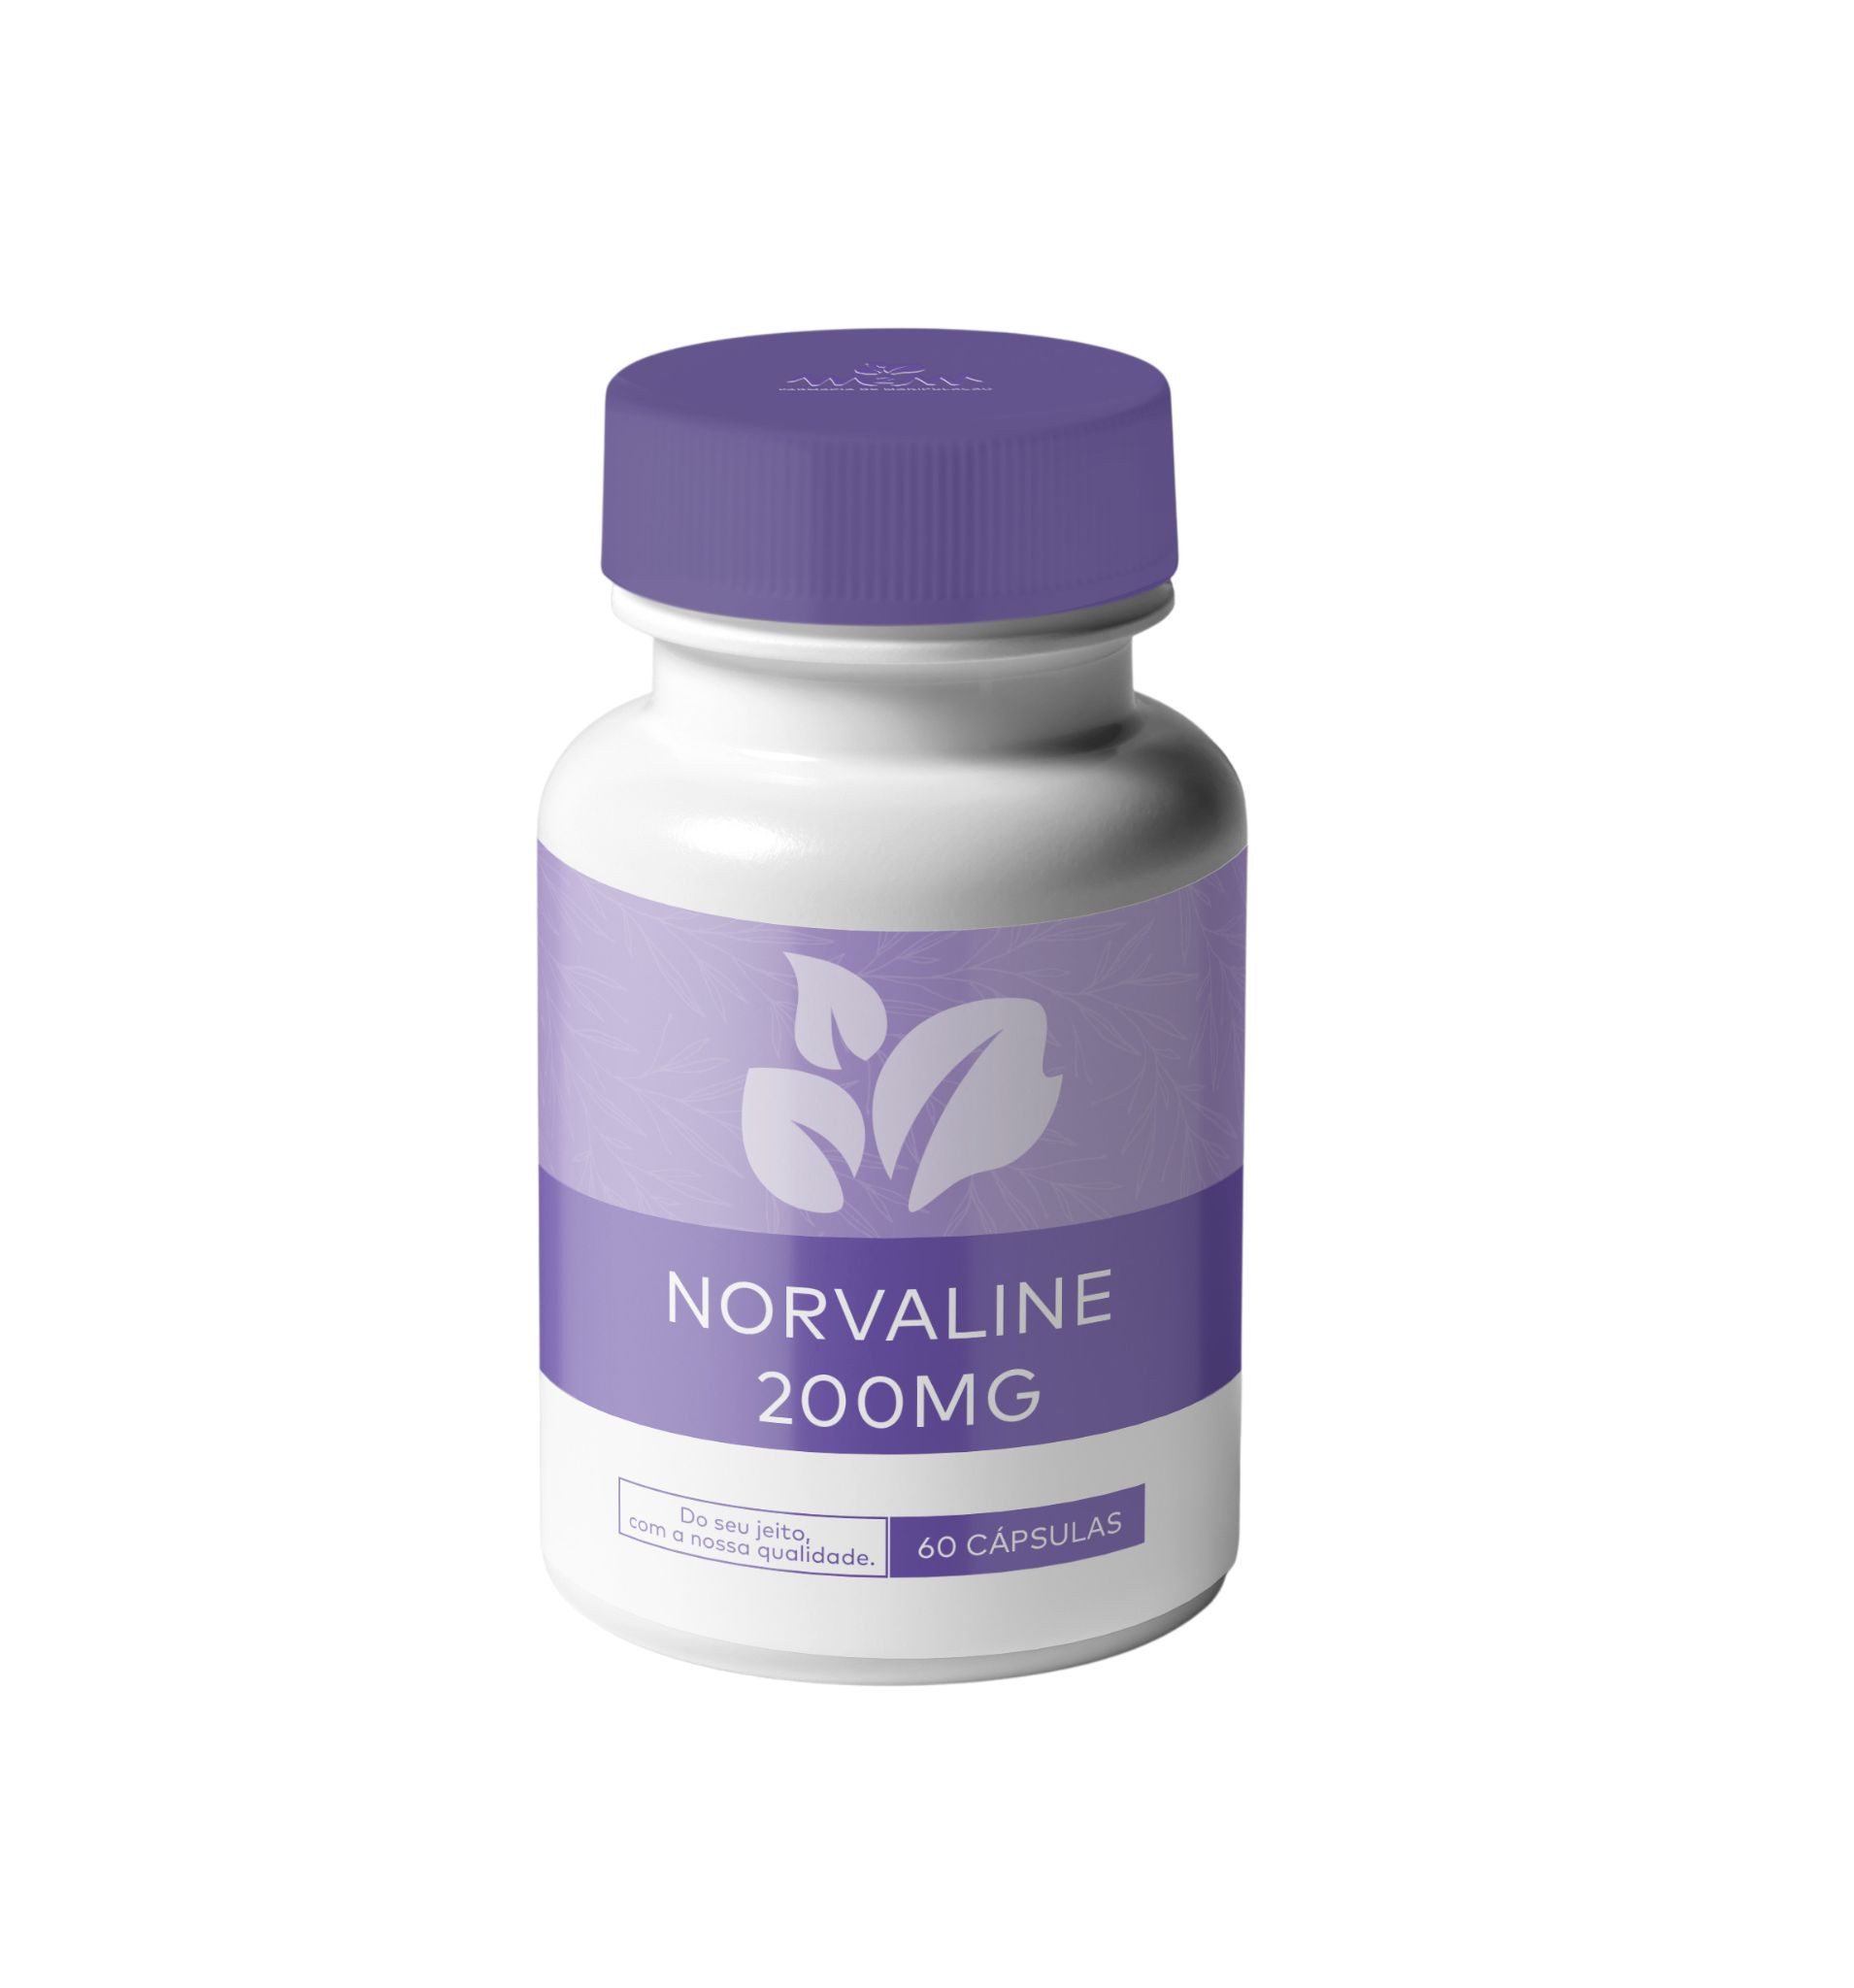 Norvaline 200mg - Cápsulas que melhoram a força muscular e o desempenho físico